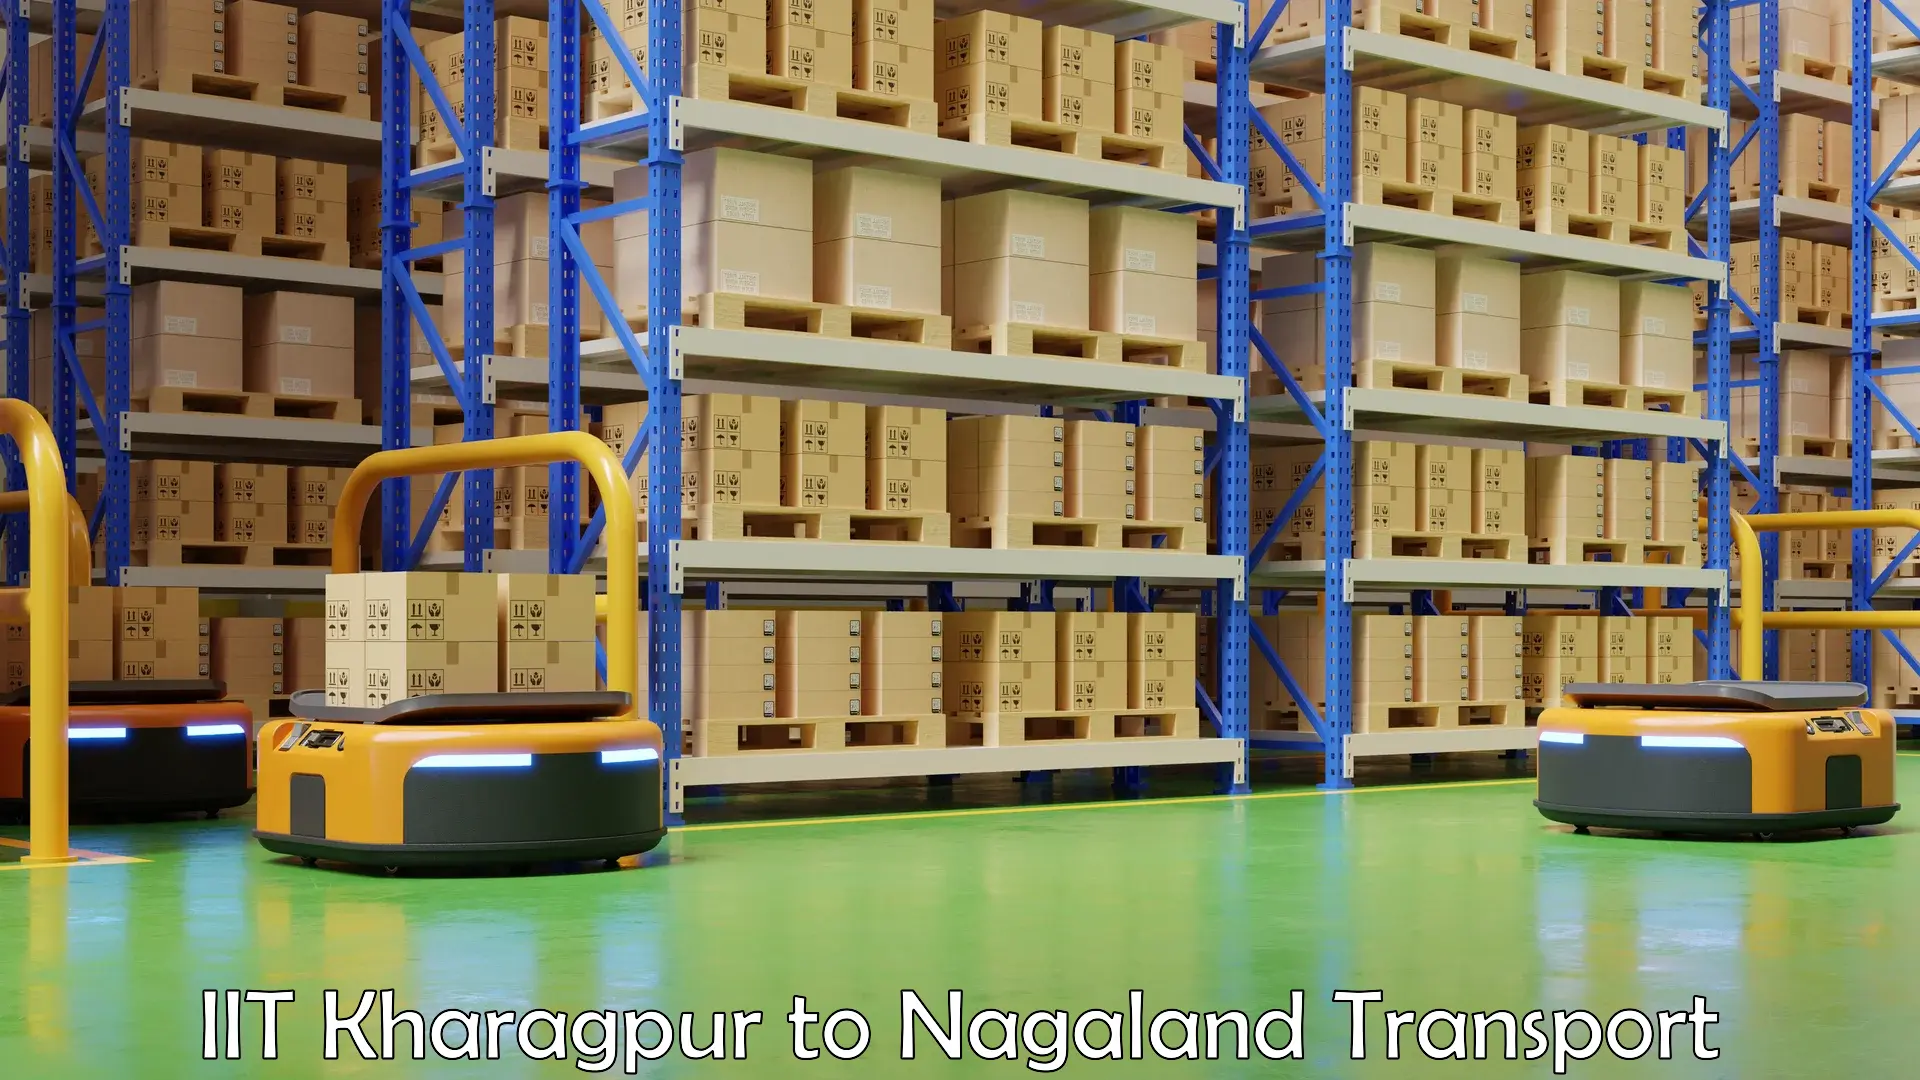 Shipping services IIT Kharagpur to NIT Nagaland